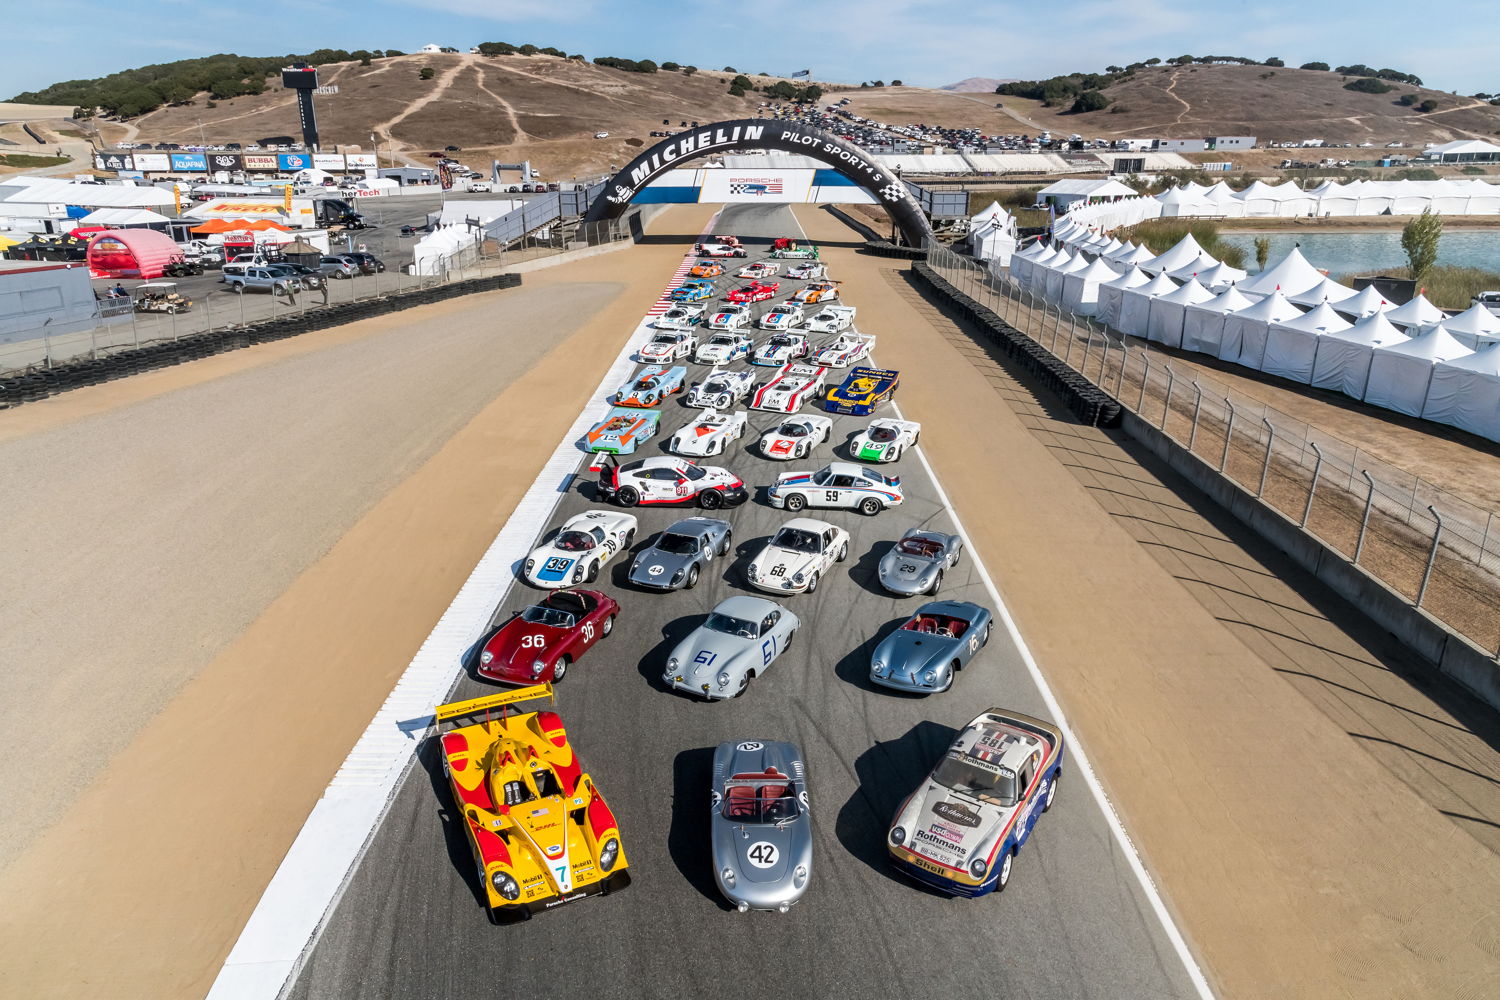 La sexta edición de Porsche Rennsport Reunion, realizada desde el jueves hasta ayer domingo en Laguna Seca (California, EE.UU.) dejó extasiados a más de 60.000 seguidores de la marca. A la cita asistieron entusiastas de las carreras de vehículos legendarios e inolvidables pilotos de las últimas cinco décadas. Alrededor de 2.500 vehículos, desde el 356 Speedster al RS Spyder, pasando por el 959 Dakar o el 919 Hybrid, entusiasmaron a los visitantes con sus vueltas rápidas en siete diferentes categorías. El tema de esta sexta edición de Porsche Rennsport Reunion fue ‘Champions’ (‘Campeones’). El fabricante de autos deportivos de Stuttgart, con más de 30.000 carreras ganadas, es de lejos la marca más exitosa en el mundo de la competición.